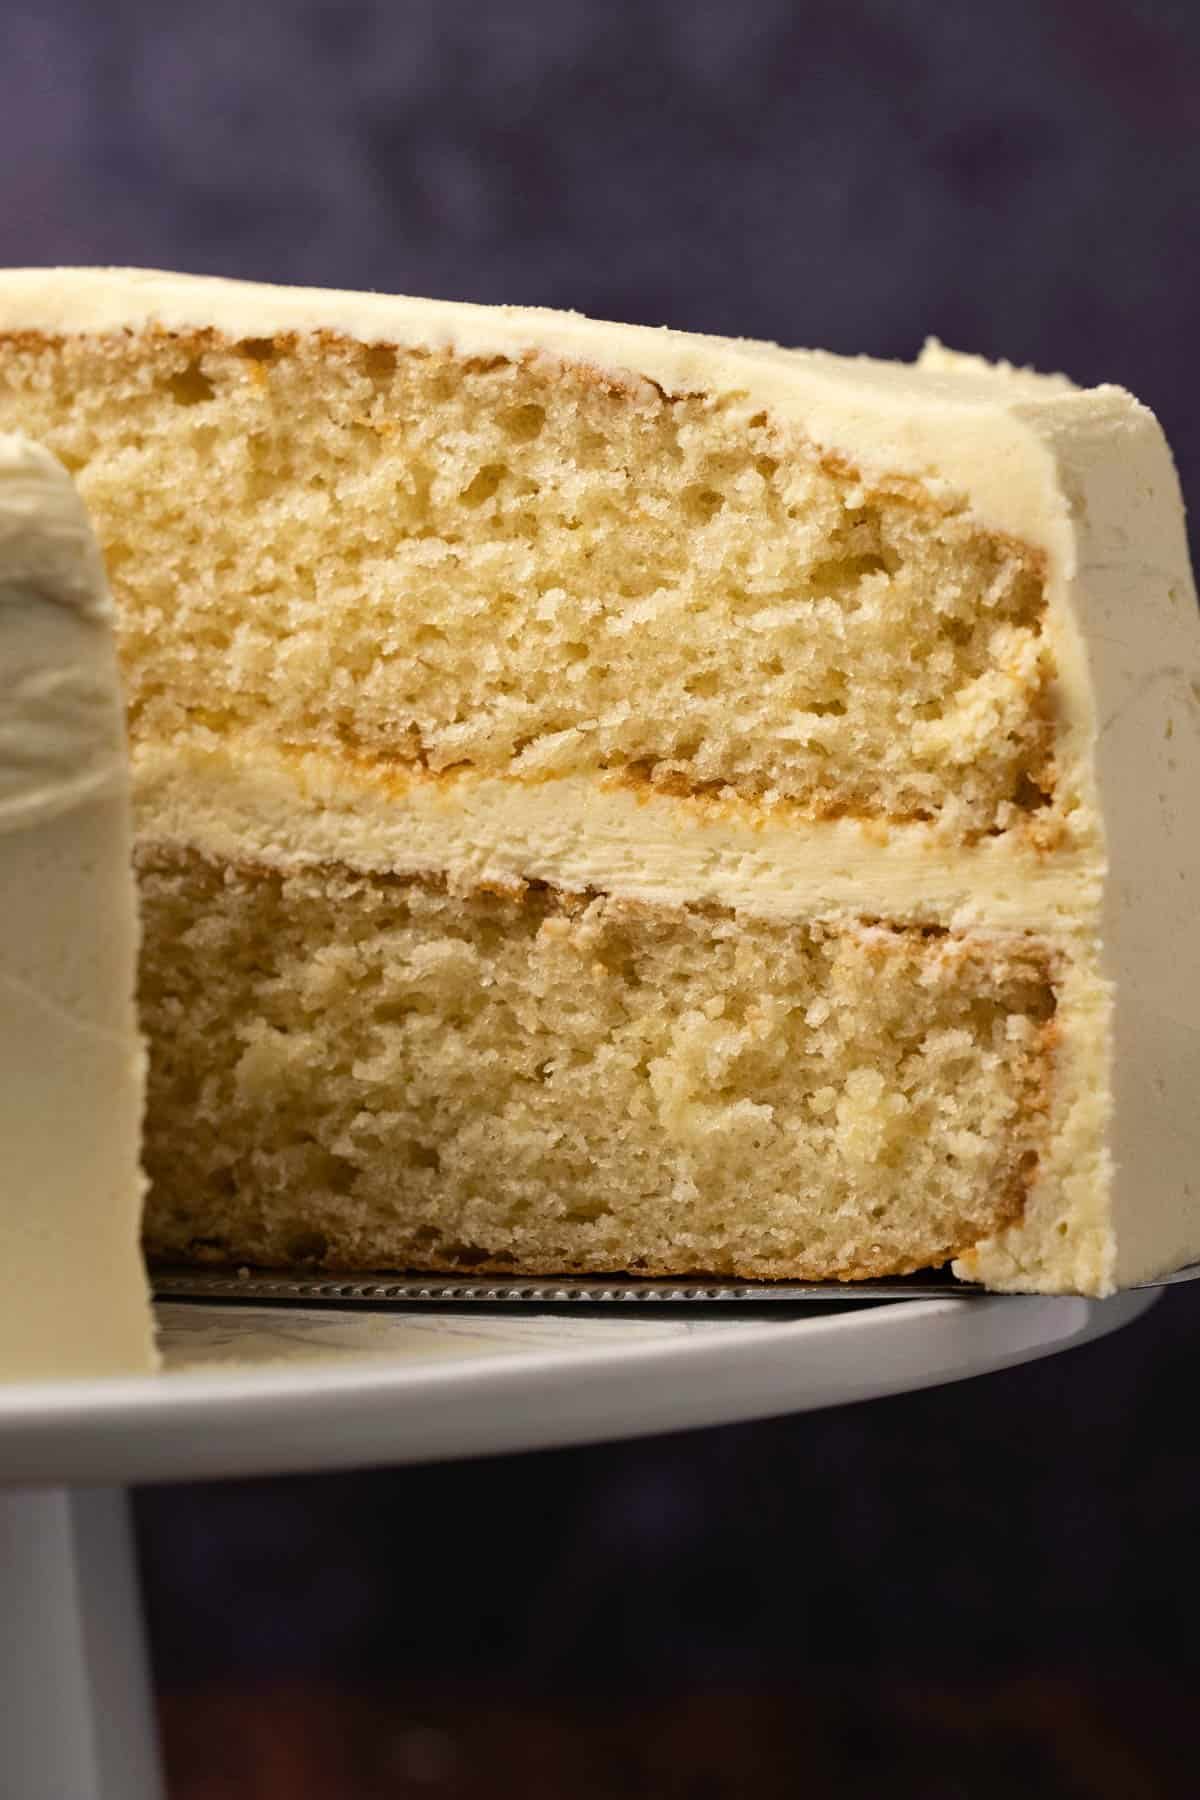 Vanilla Carving Cake - Cake Decorating Recipe - Veena Azmanov